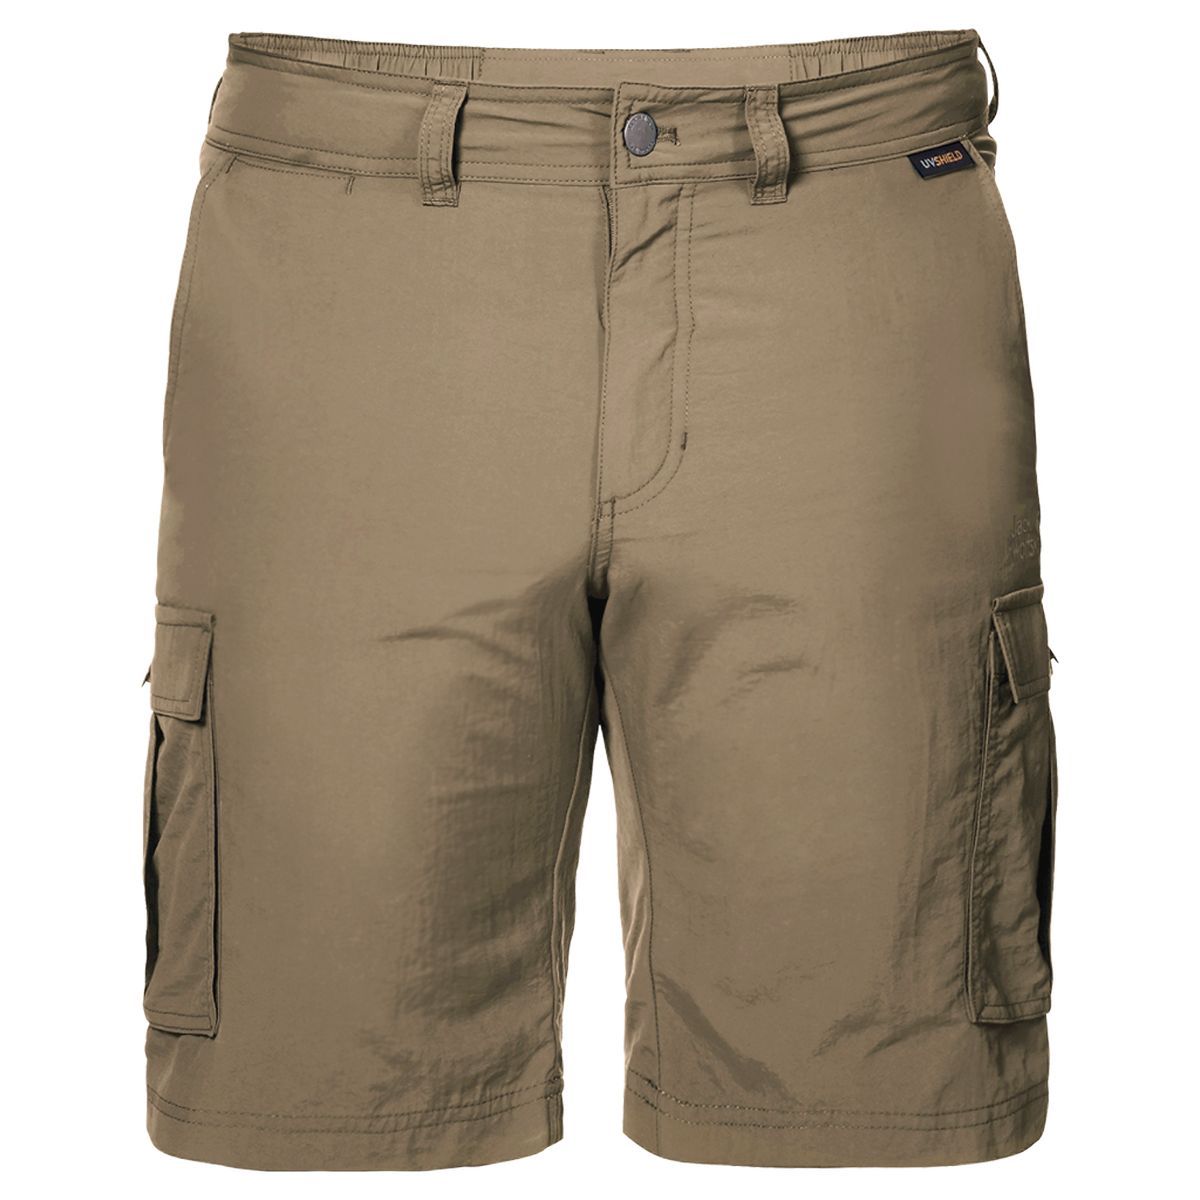   Jack Wolfskin Canyon Cargo Shorts, : . 1504201-5605.  54